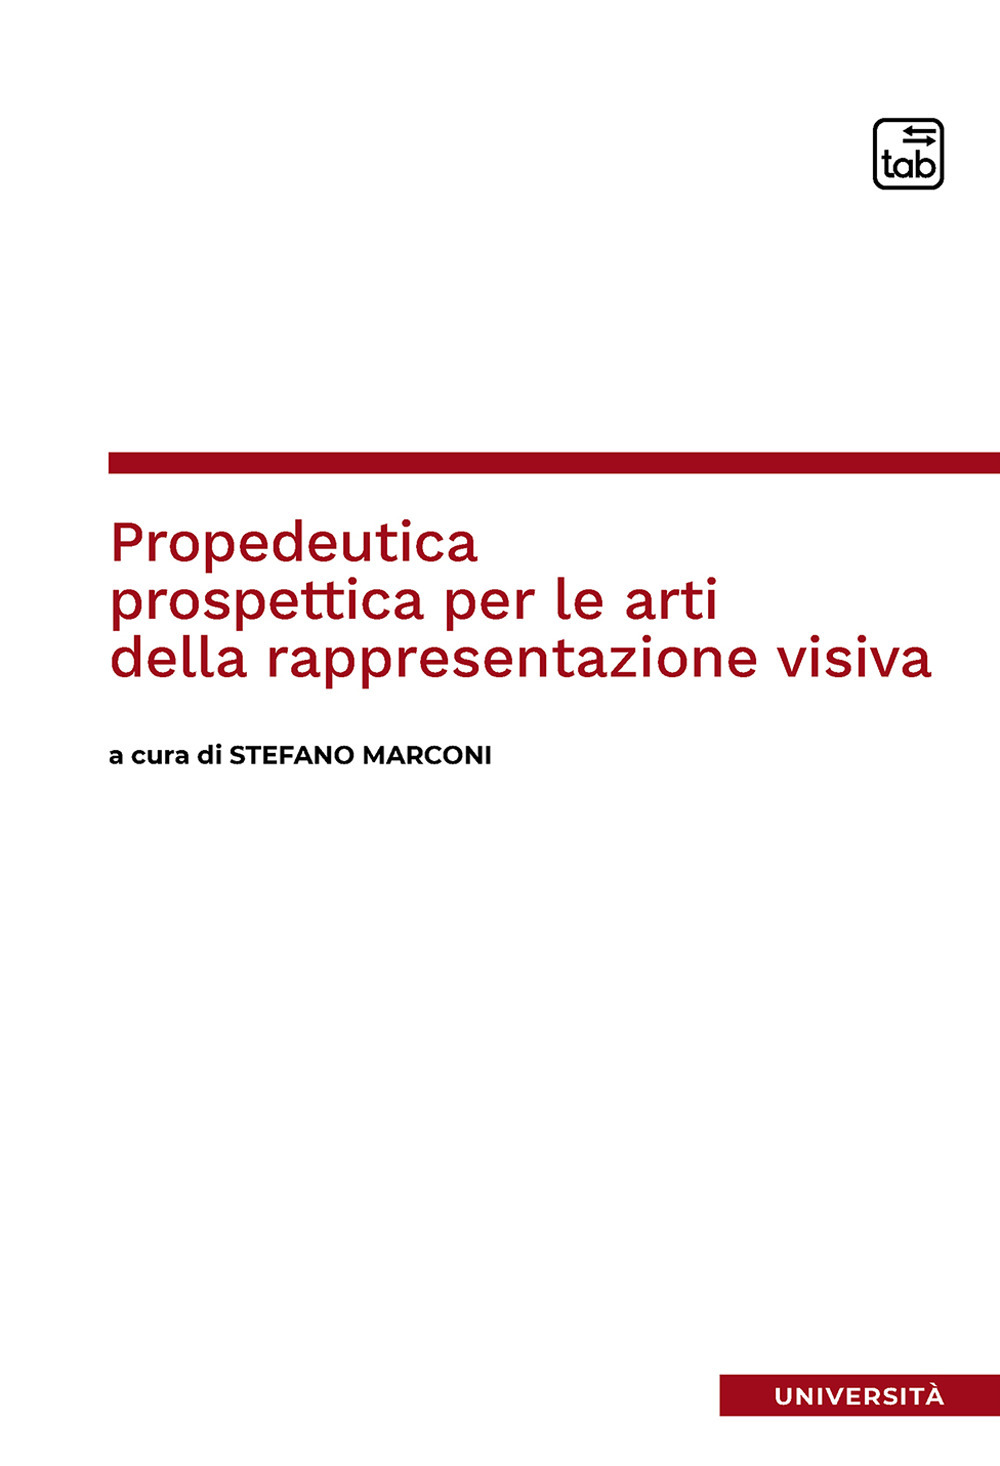 Propedeutica prospettica per le arti della rappresentazione visiva